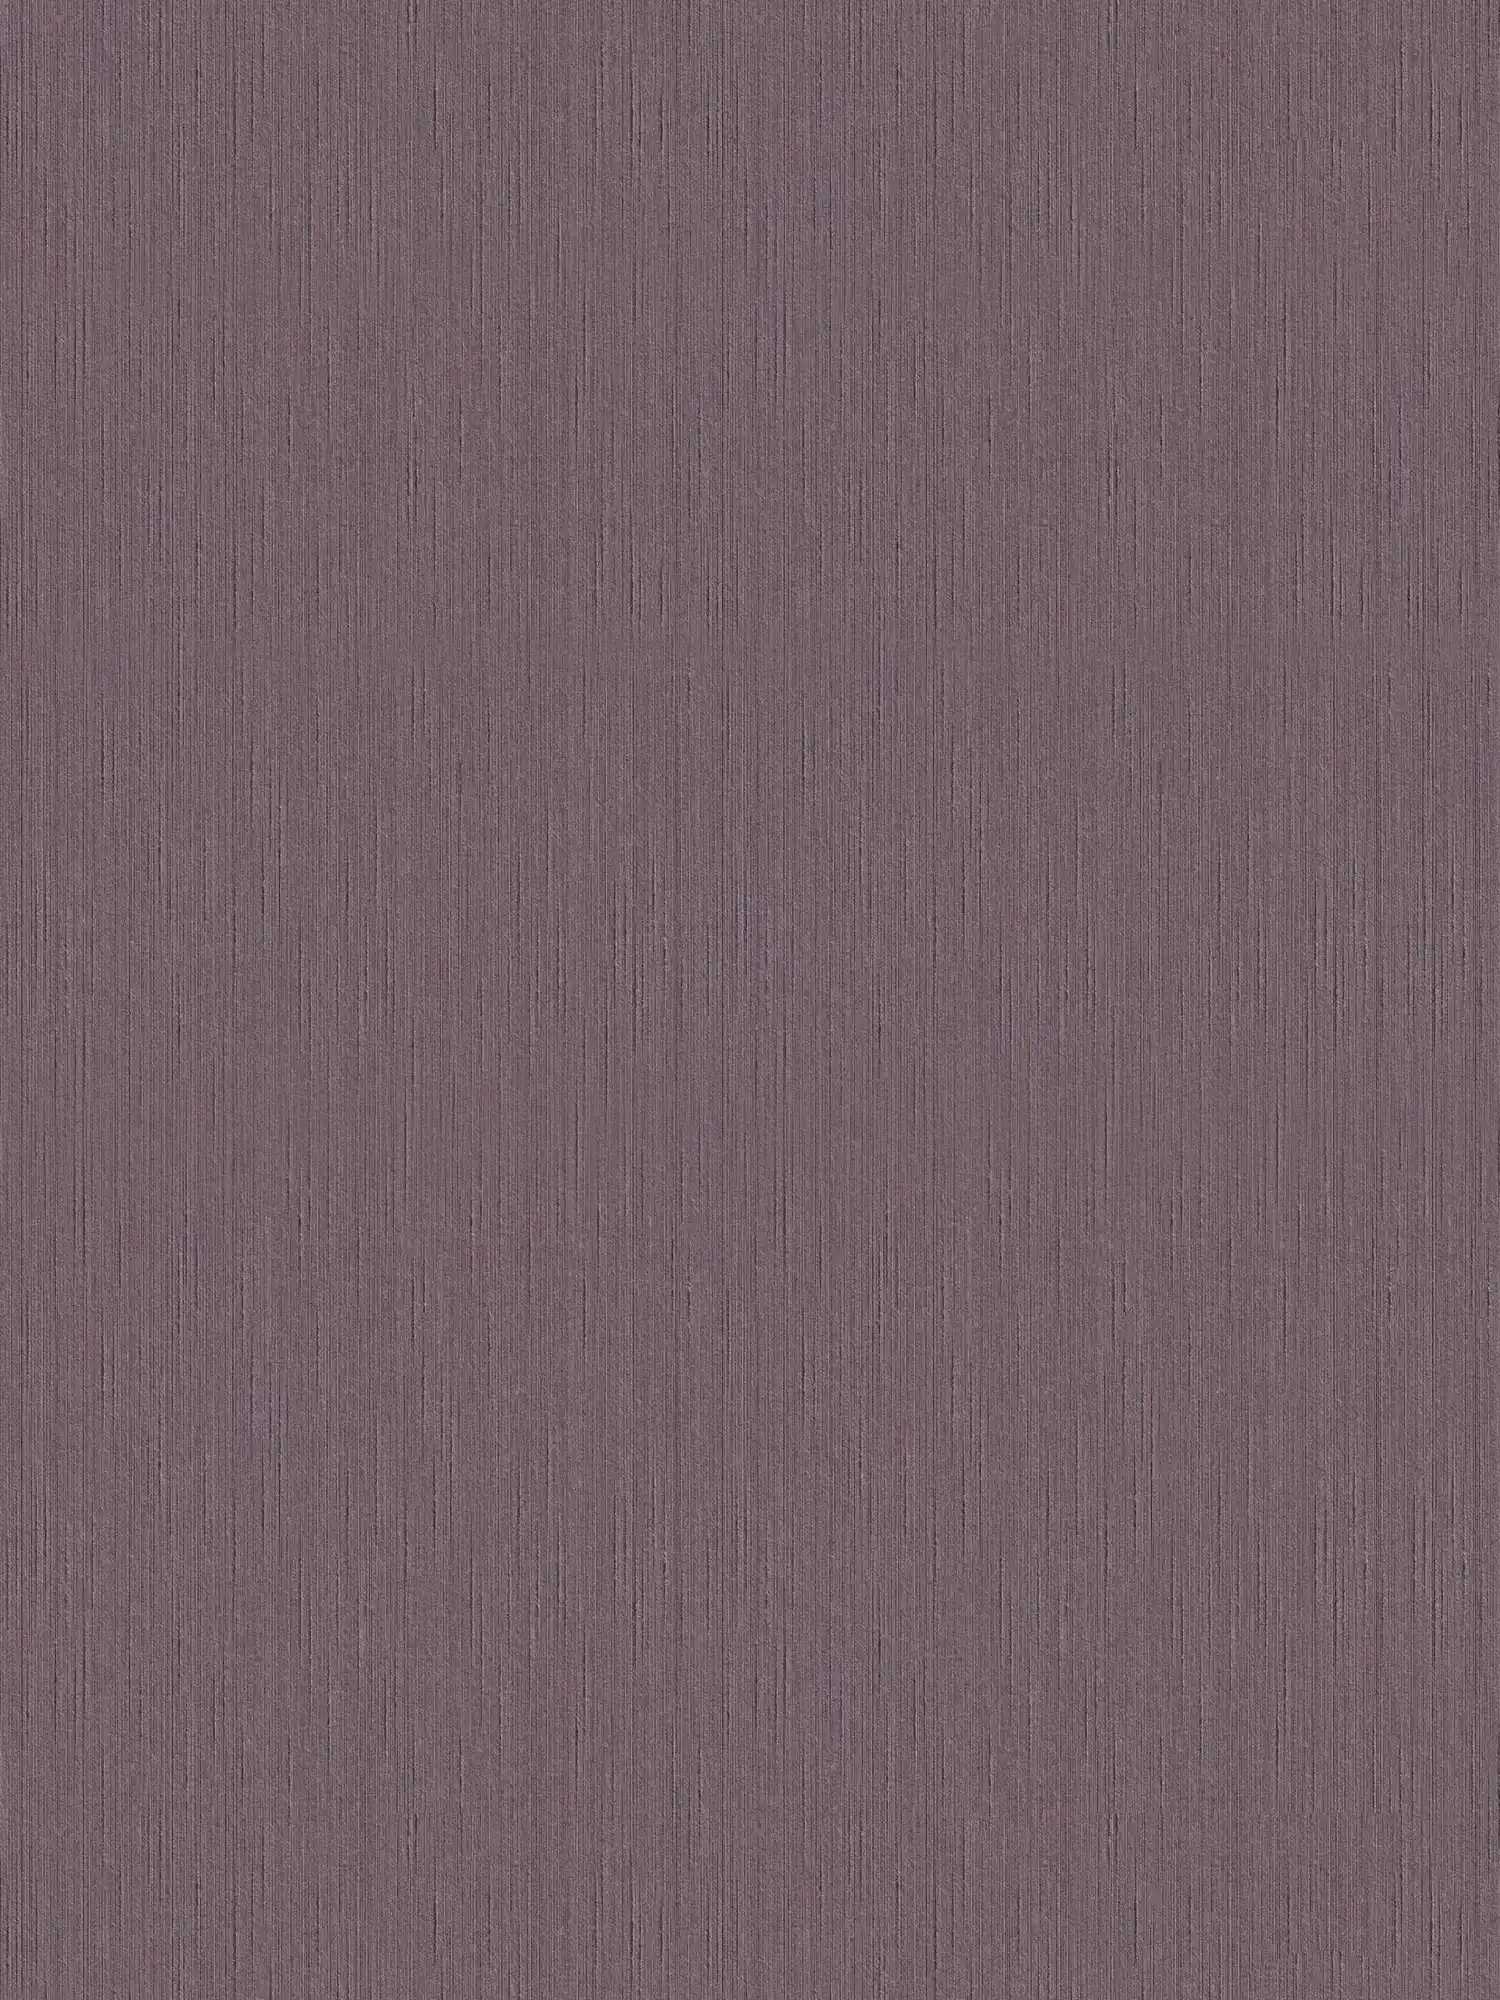 Papel pintado malva oscuro con estructura natural - morado, violeta
